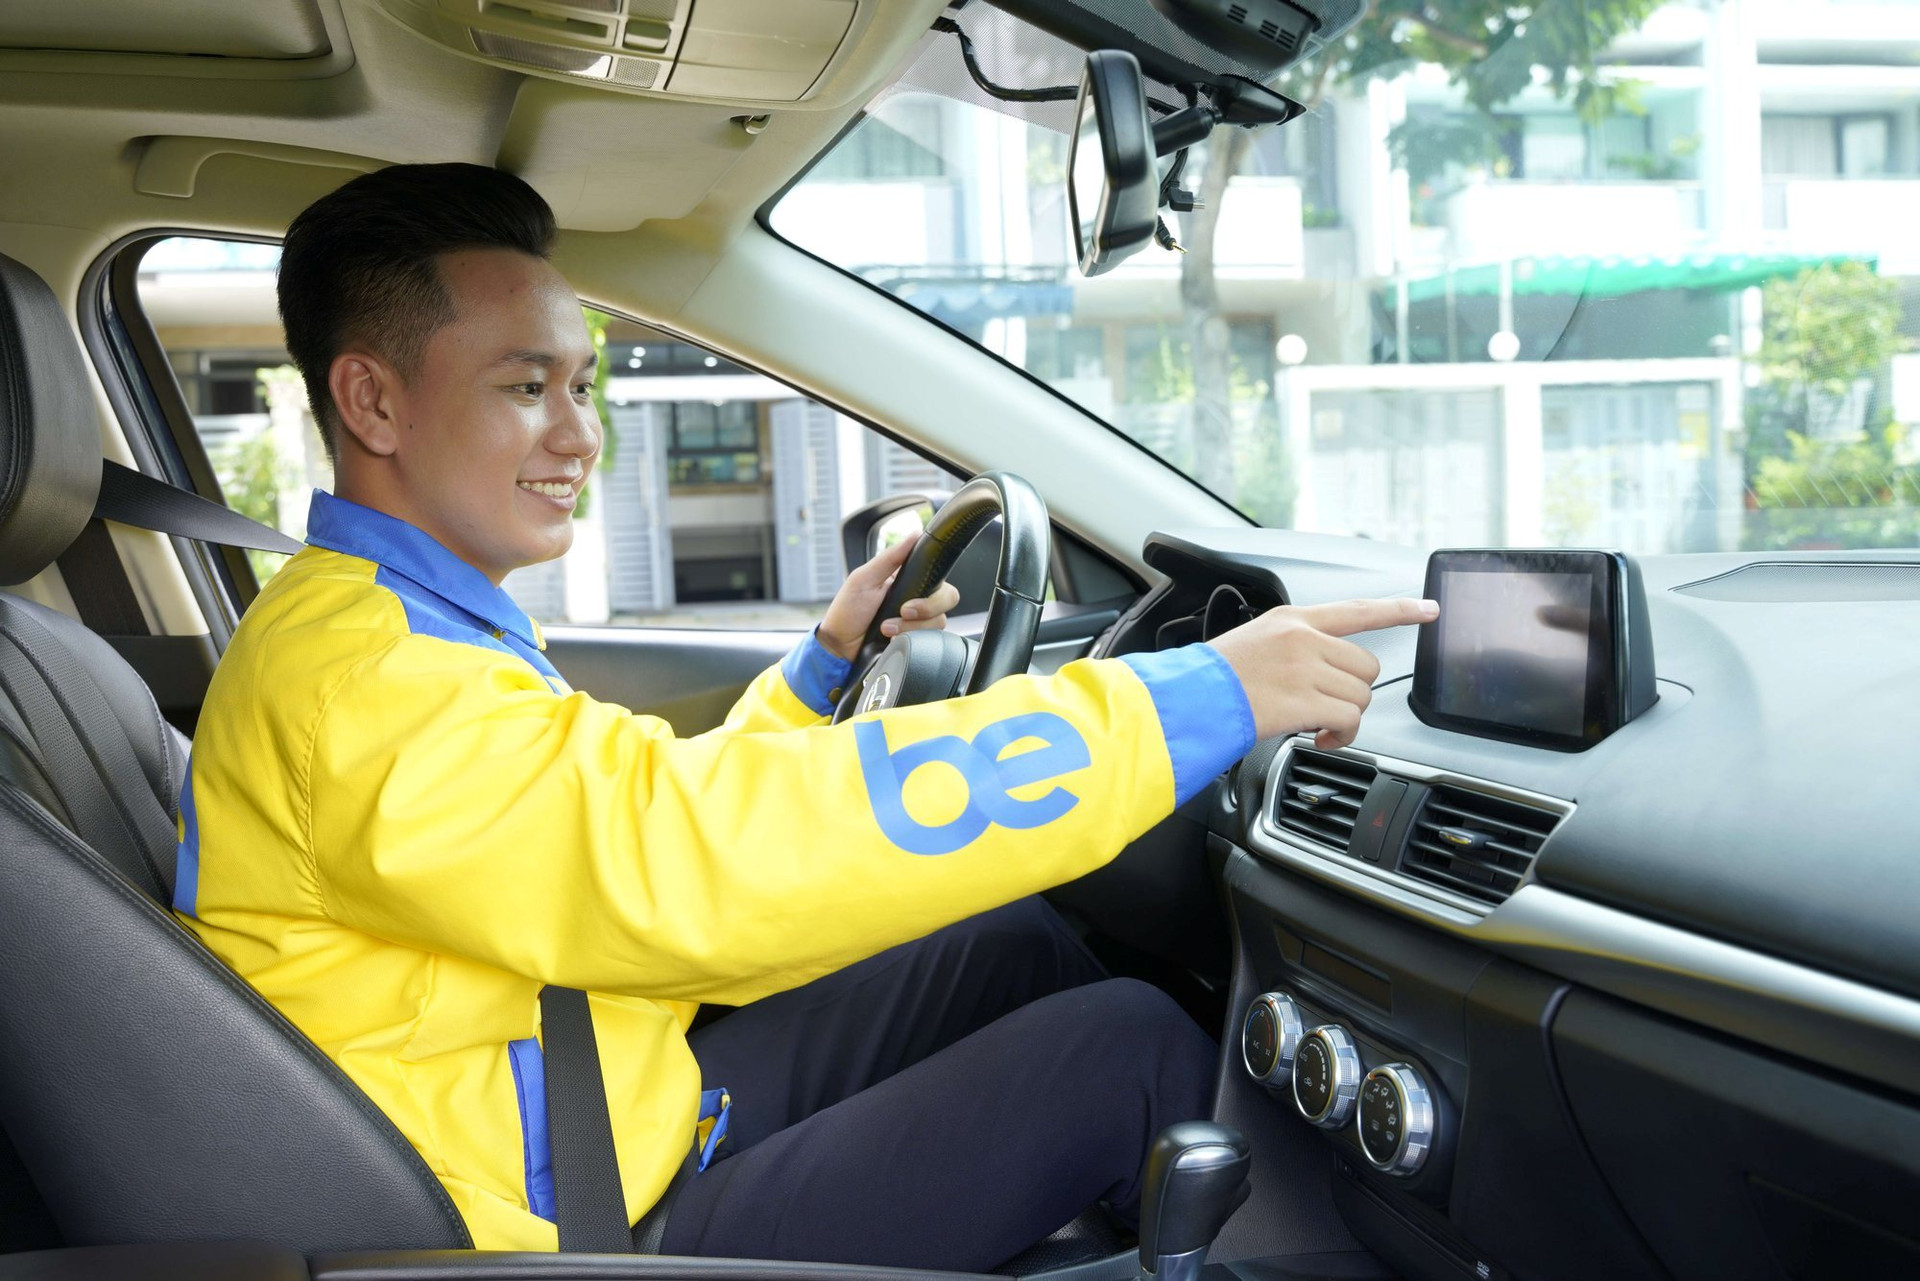 Taxi điện VinFast chính thức hoạt động trên app Be, giá cả liệu có cạnh tranh hơn?